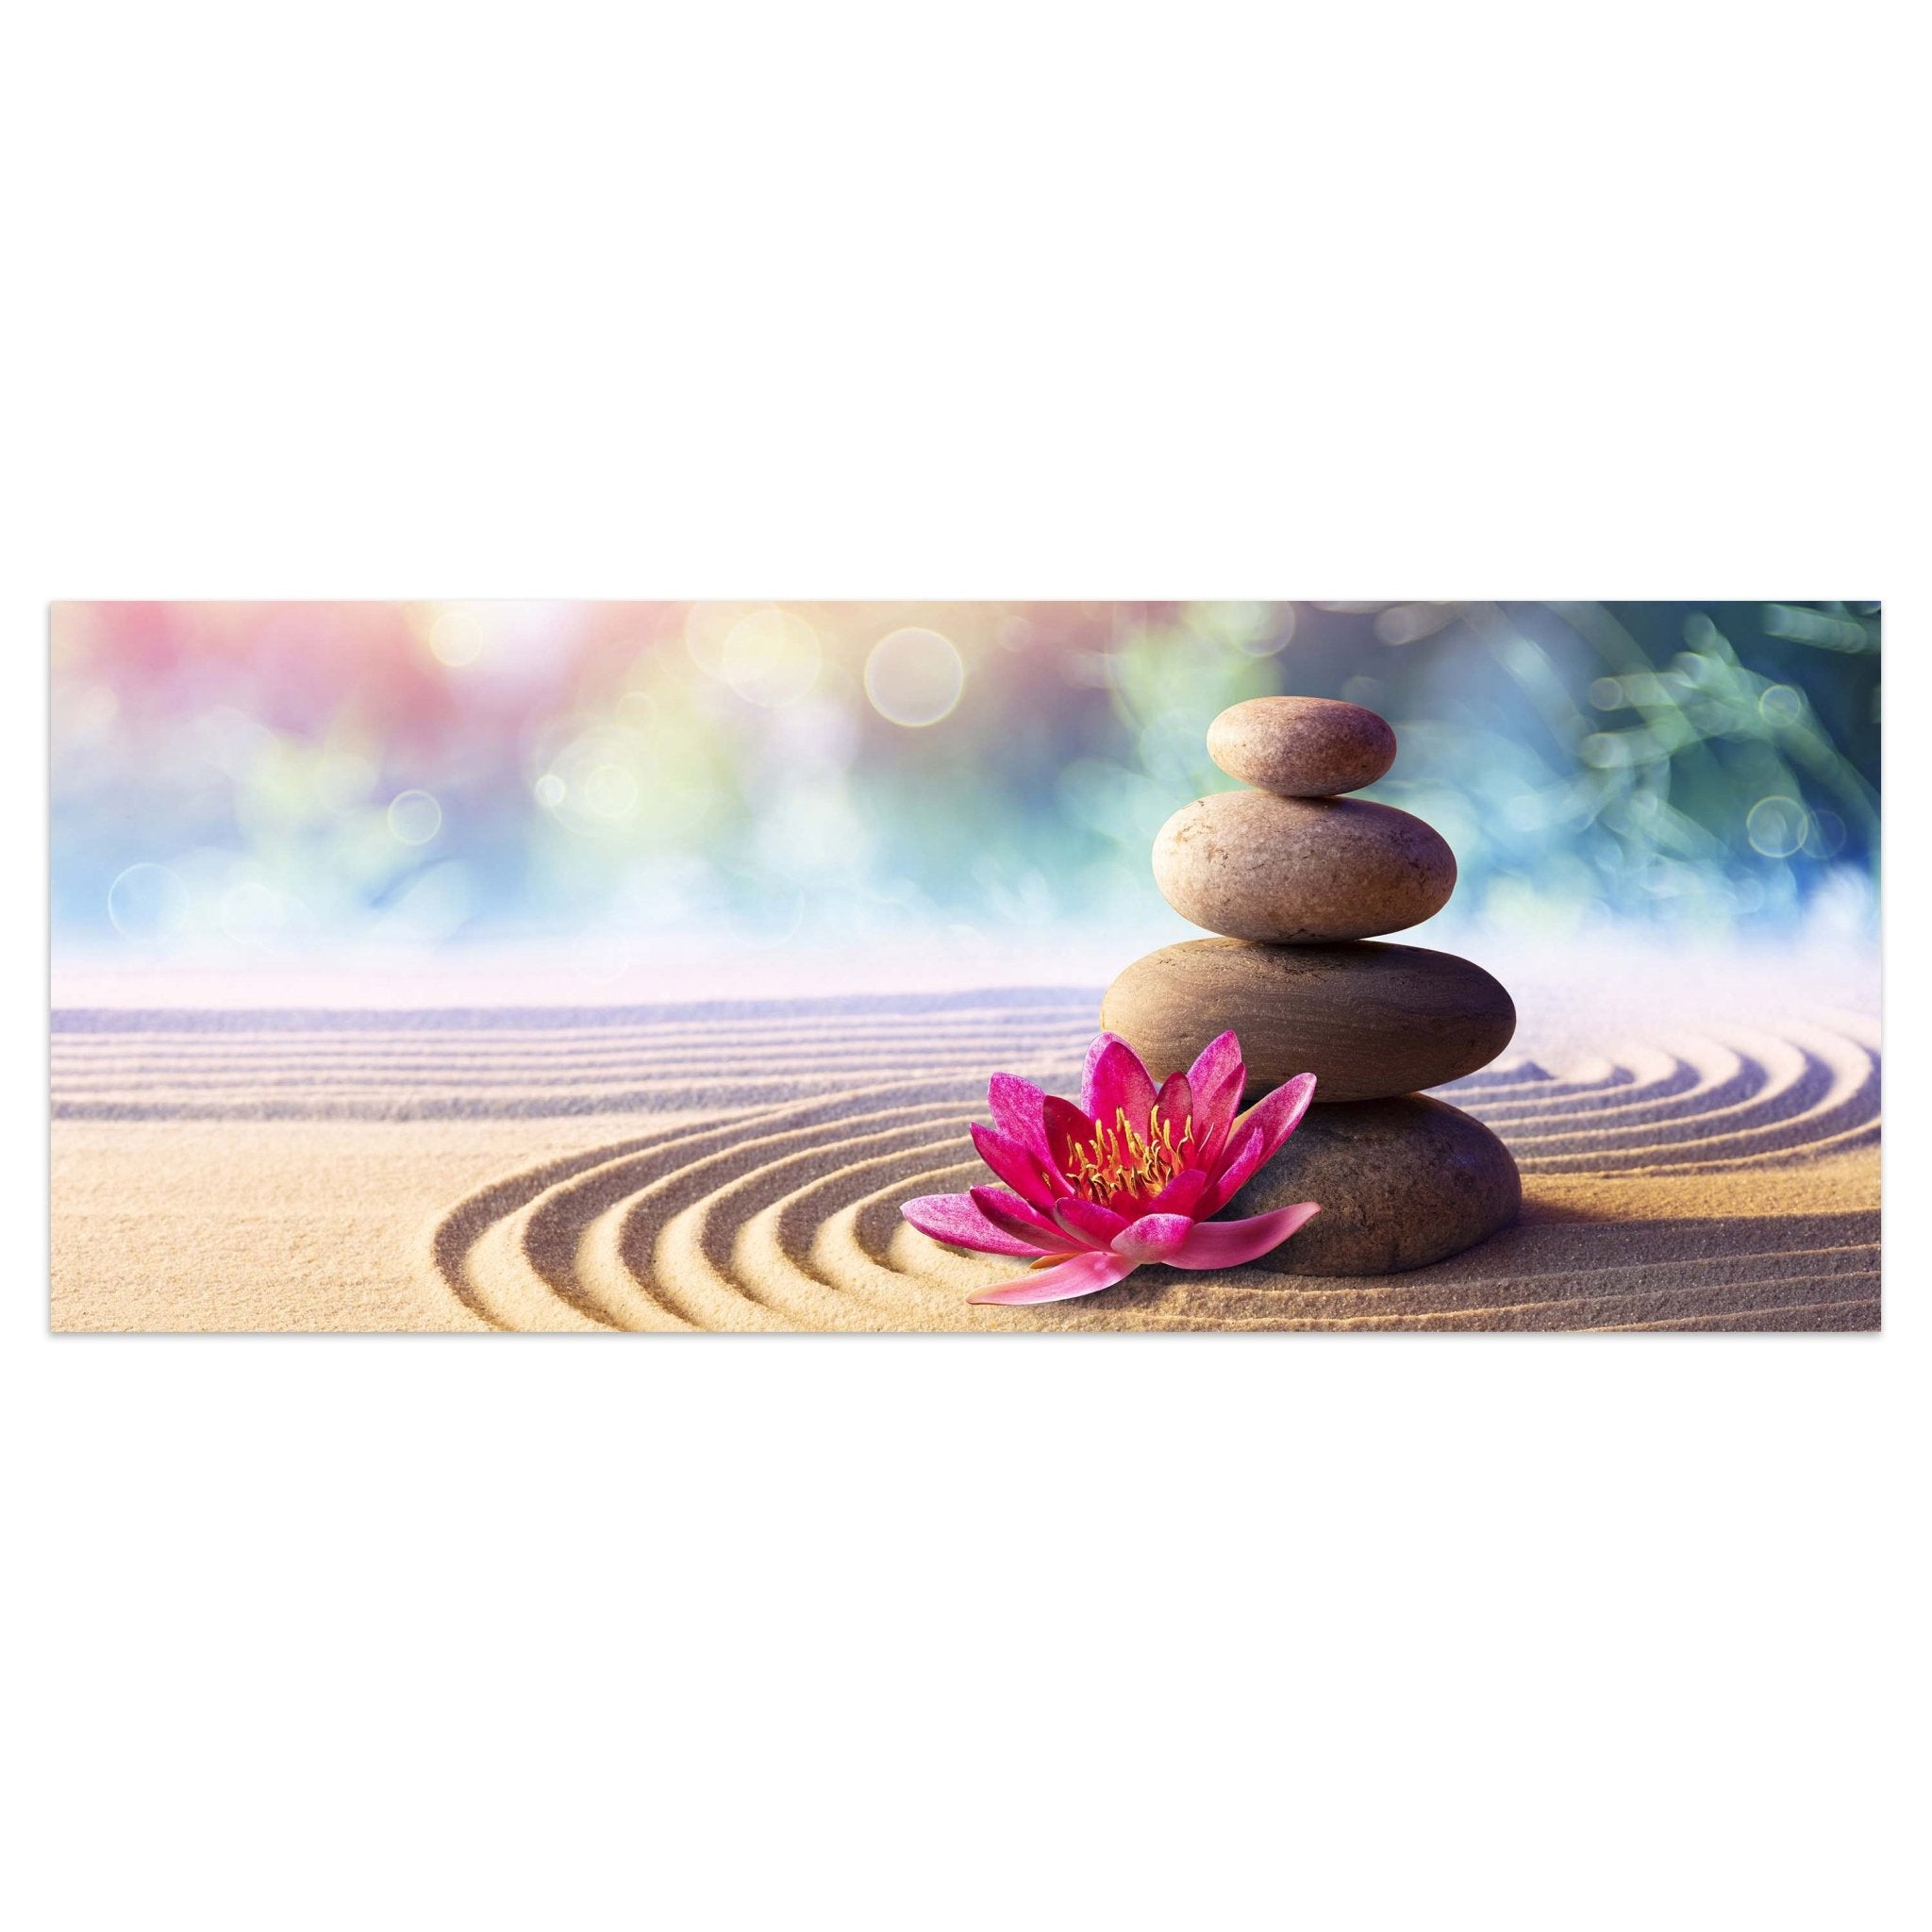 Leinwandbild Lotus, Steine, Sand, Kreise, Zen Garten M1107 kaufen - Bild 1